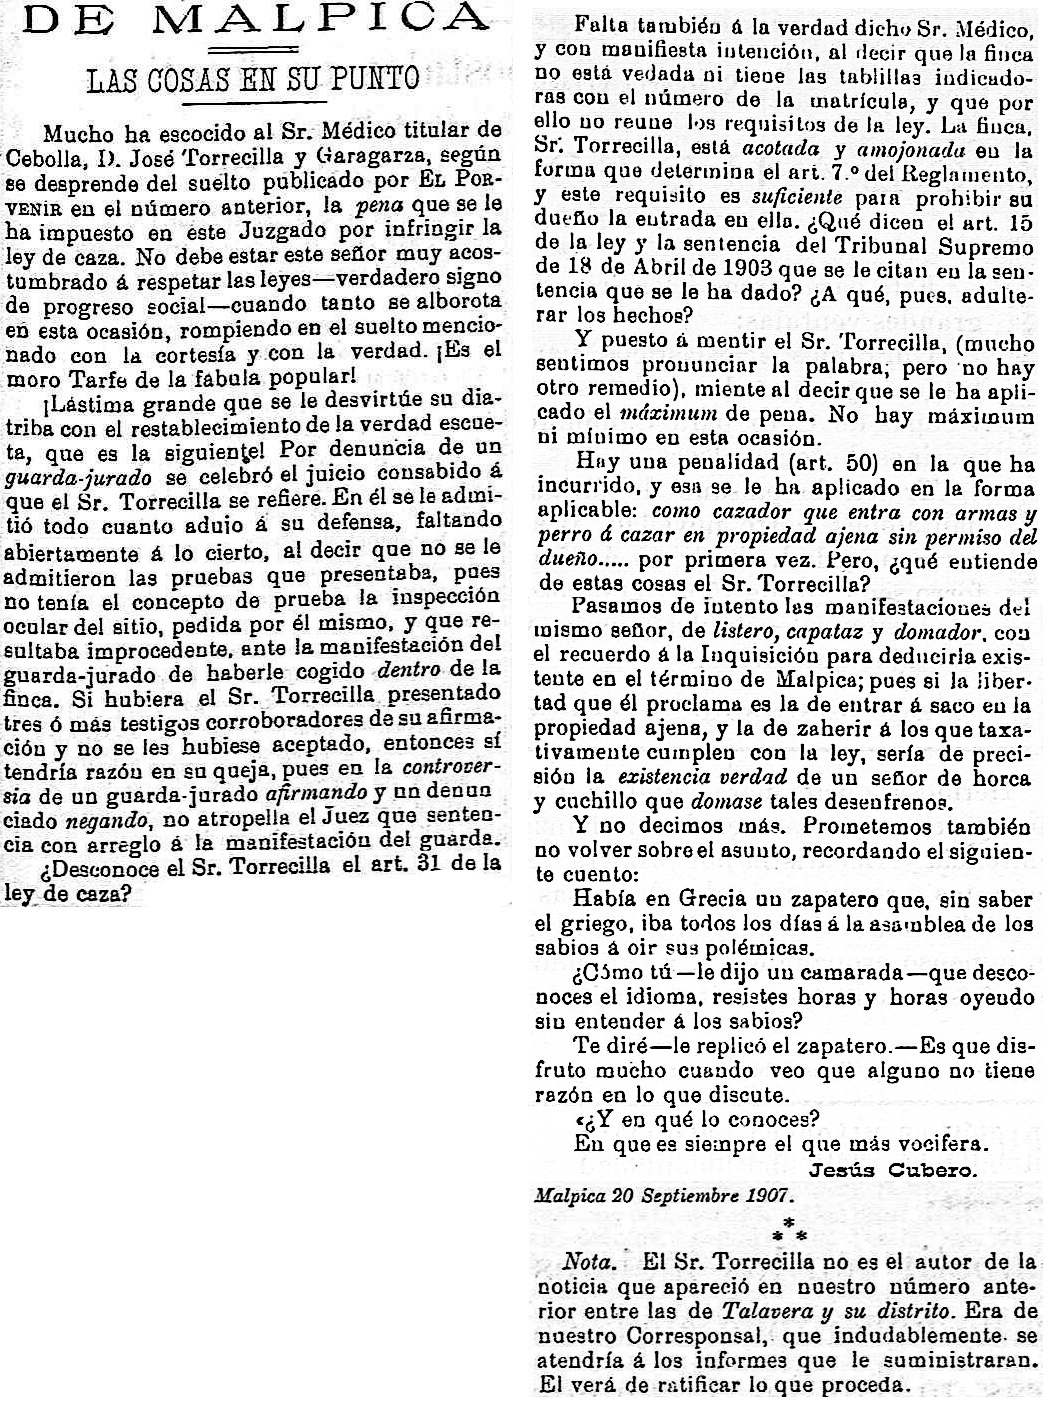 Respuesta desde Malpica a la publicación de la denuncia del médico de Cebolla por cazar en Pusa. El porvenir : periódico carlista: Año III Número 104 - 1907 septiembre 25.